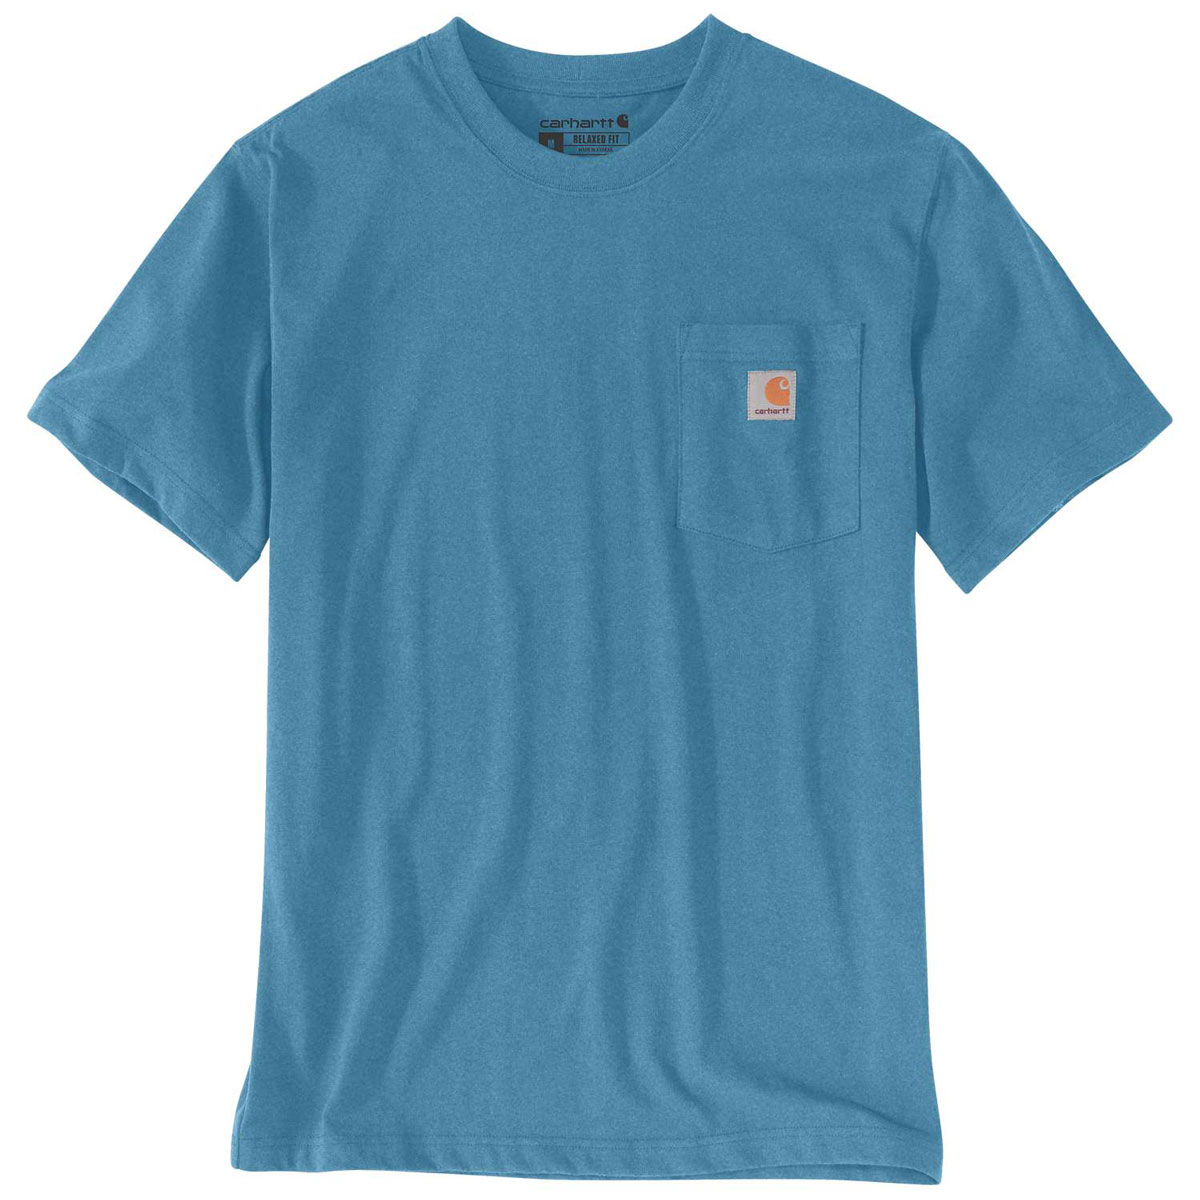 Carhartt T-Shirt mit Brusttasche - 20